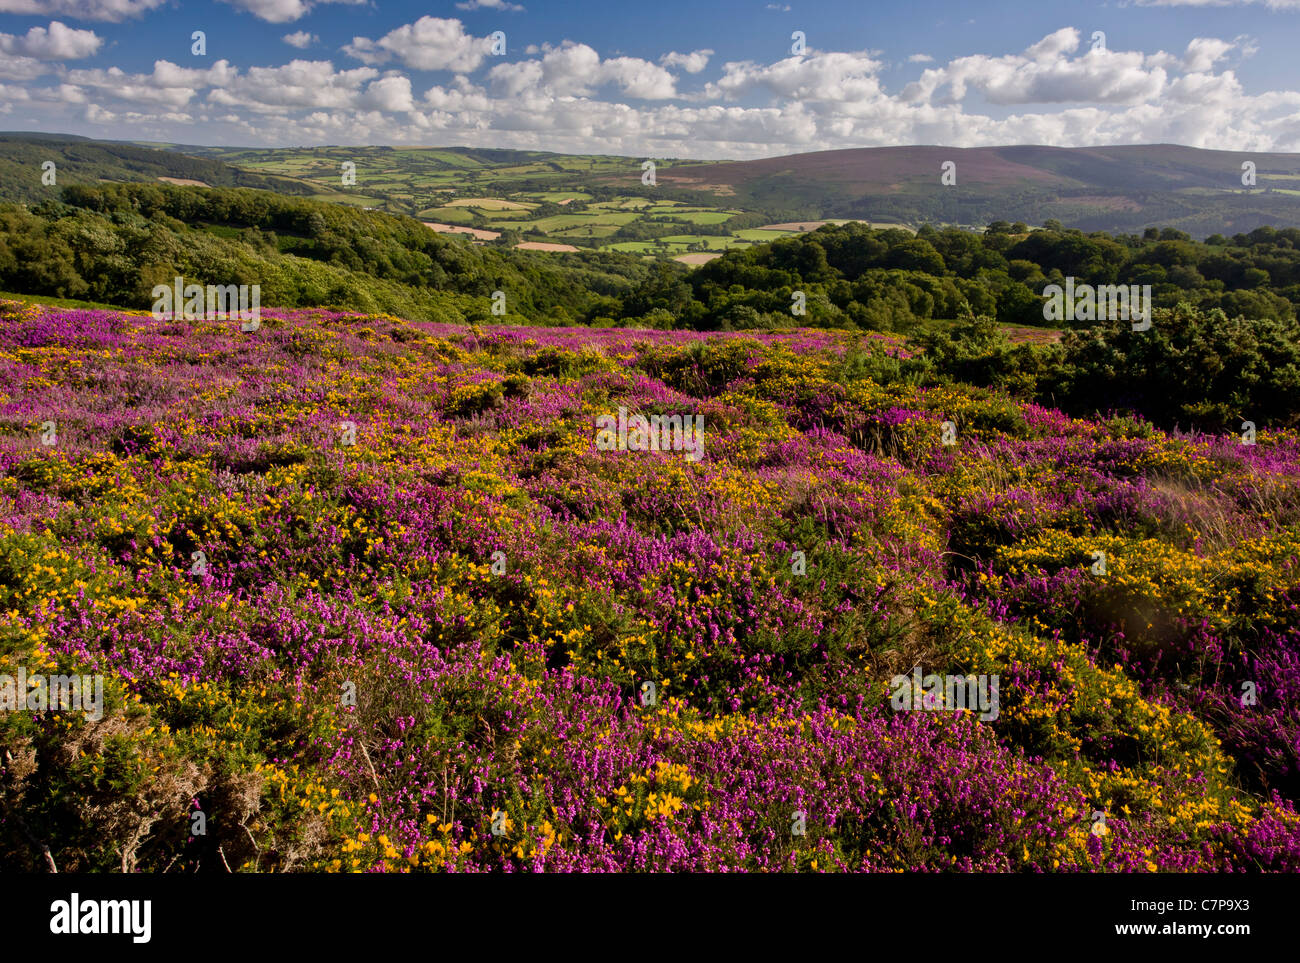 La lande d'Exmoor à la fin de l'été, avec l'ouest de l'ajonc et Bruyère cendrée en pleine floraison ; North Hill, au-dessus de Minehead, Somerset Banque D'Images